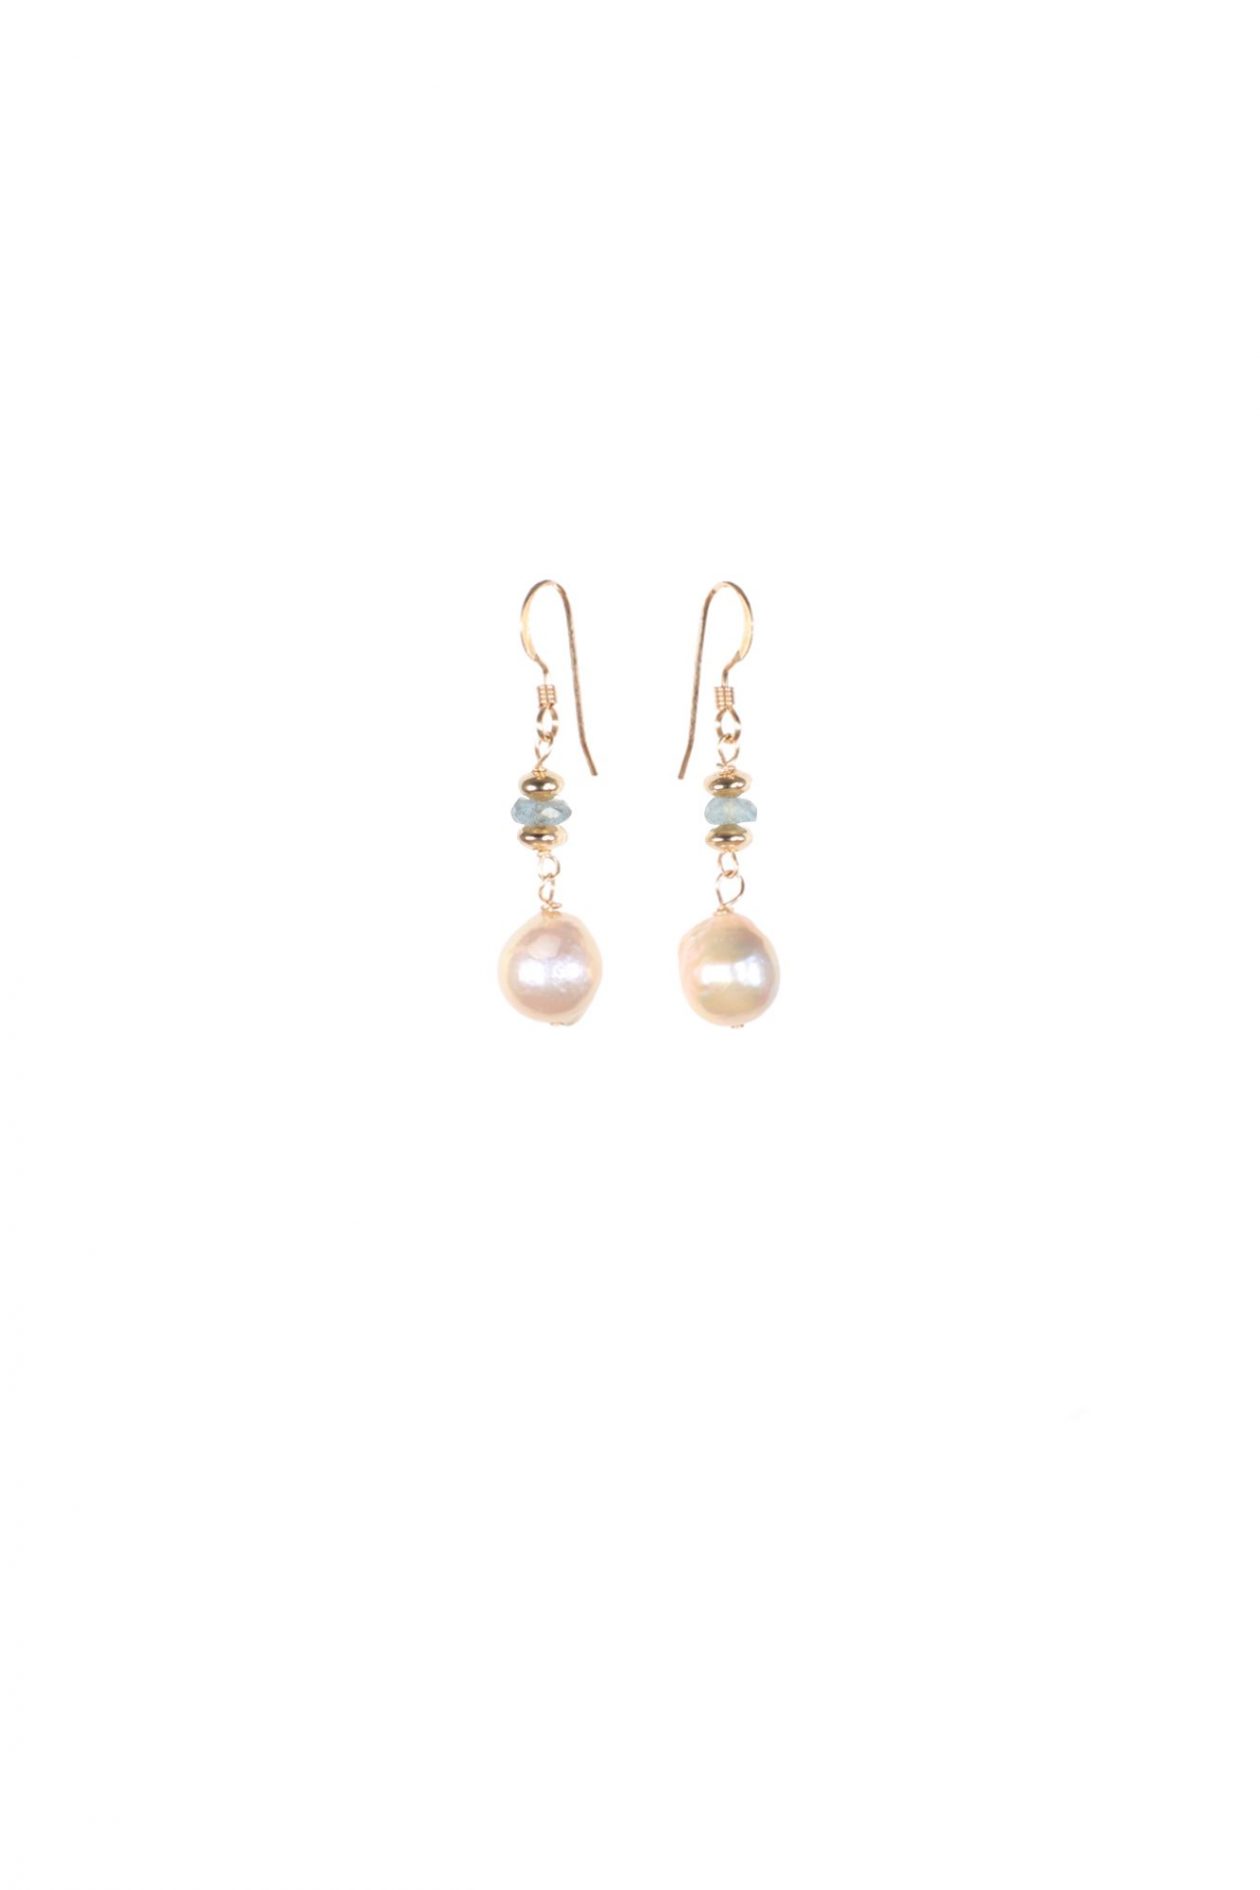 JK Designs Fresh Water Pearls with Gemstones